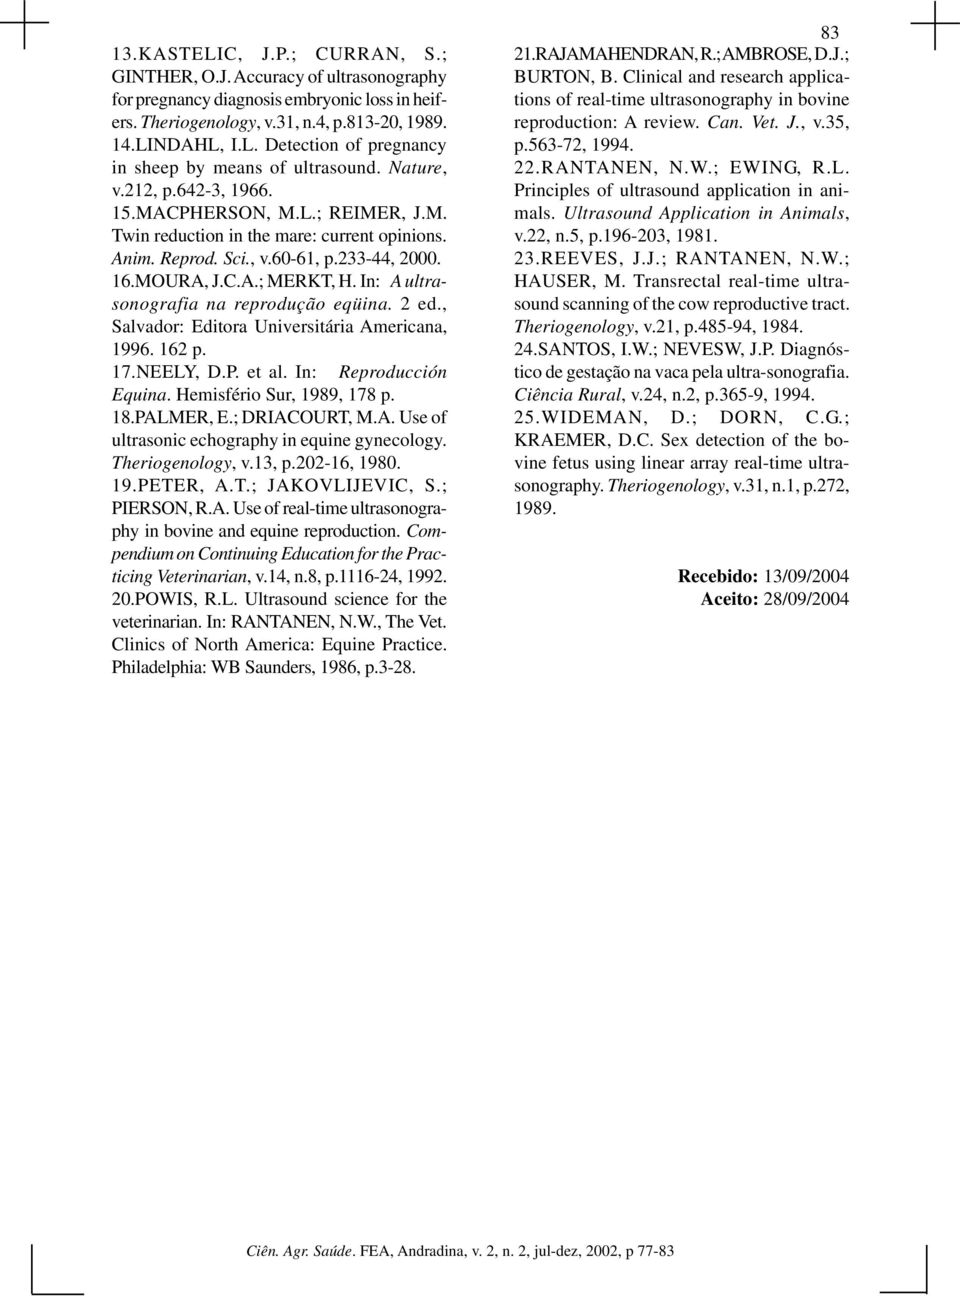 In: A ultrasonografia na reprodução eqüina. 2 ed., Salvador: Editora Universitária Americana, 1996. 162 p. 17.NEELY, D.P. et al. In: Reproducción Equina. Hemisfério Sur, 1989, 178 p. 18.PALMER, E.